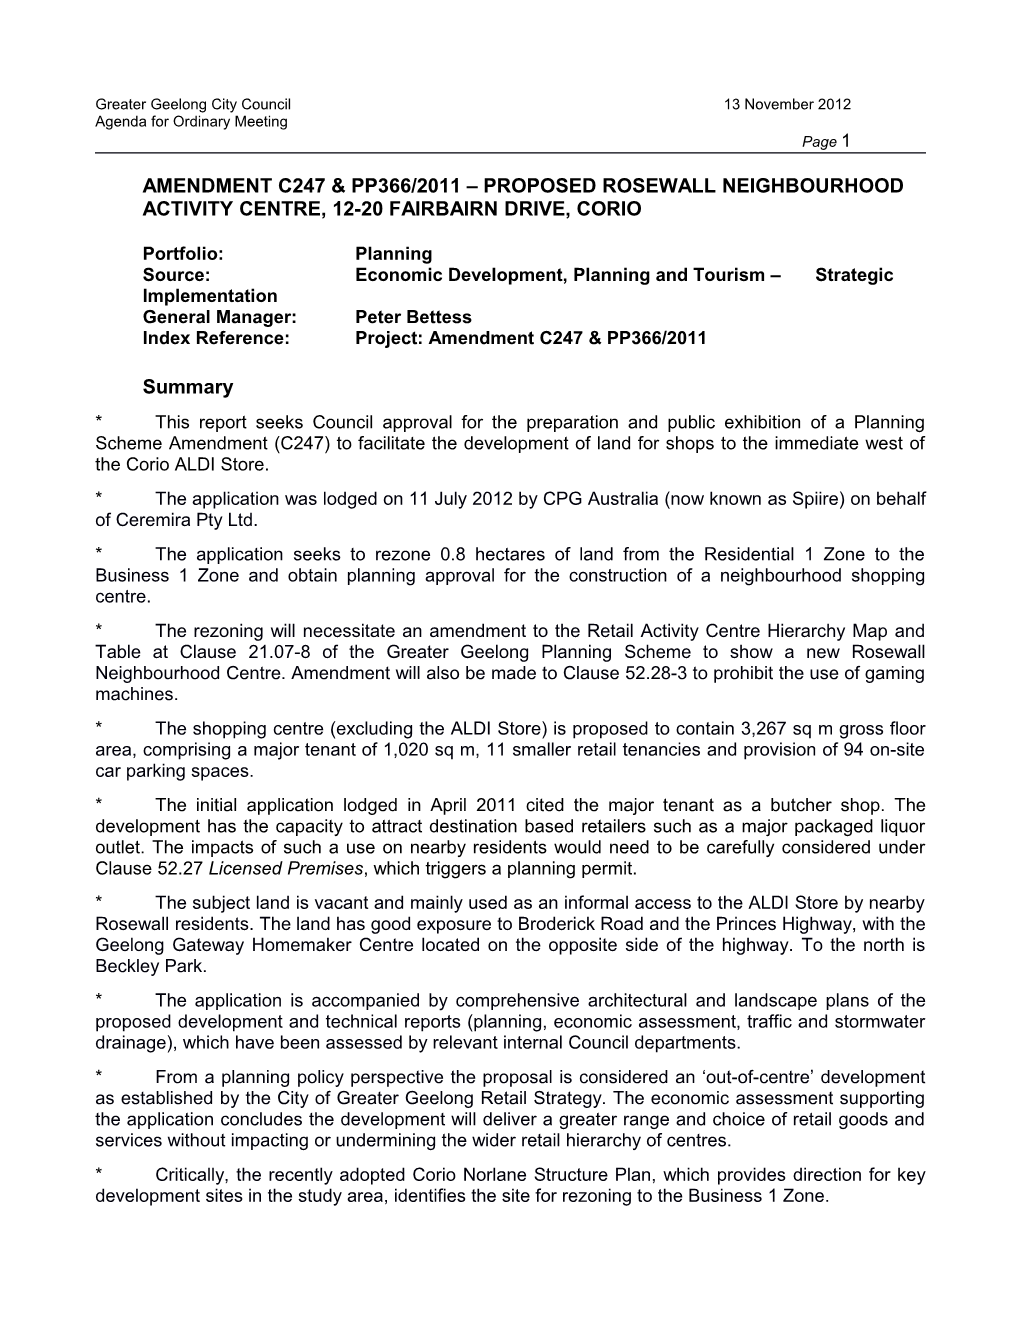 Amendment C247 & Pp366/2011 Proposed Rosewall Neighbourhood Activity Centre, 12-20 Fairbairn